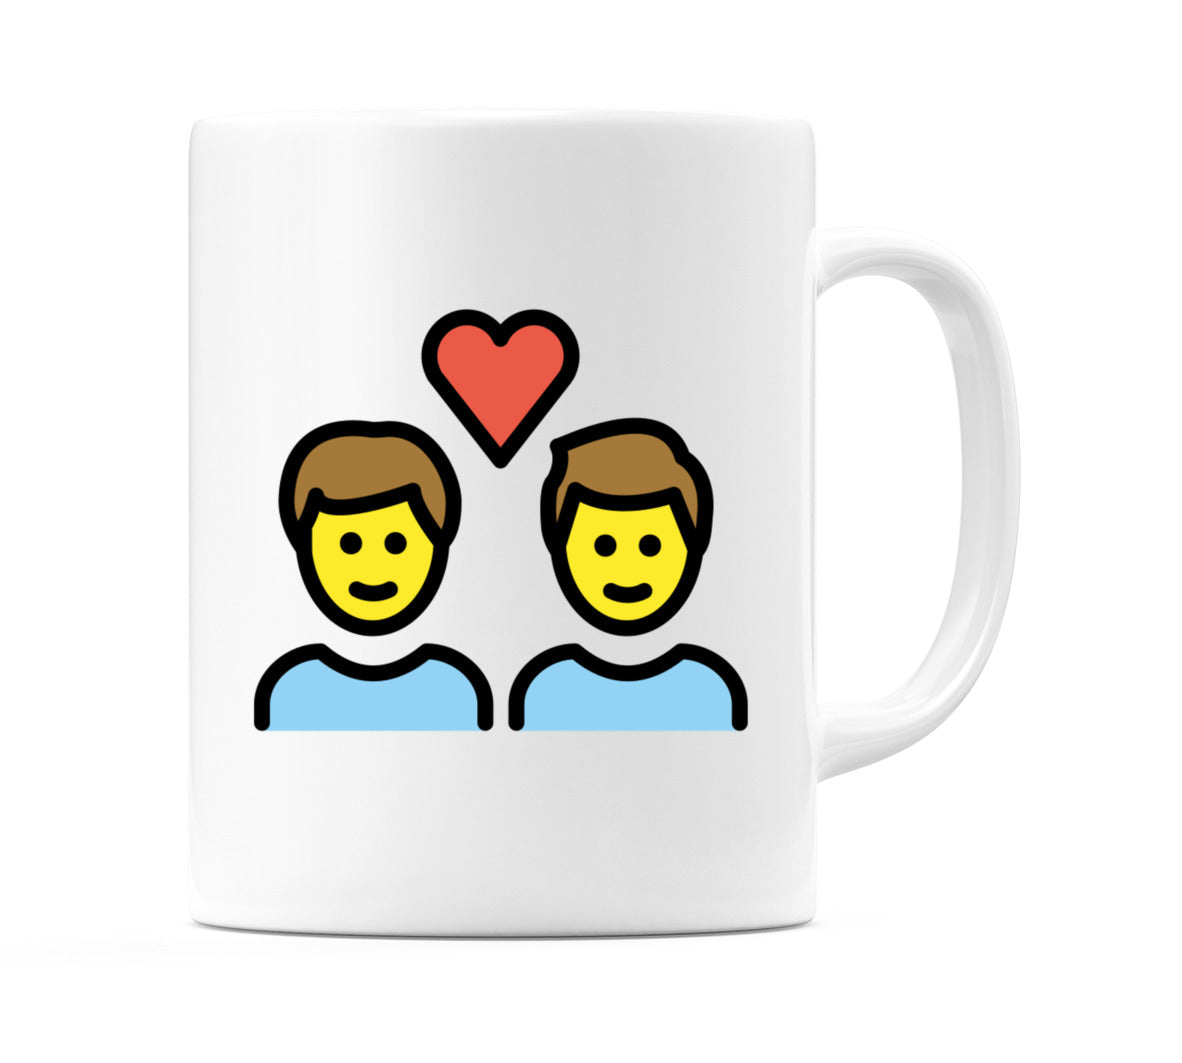 Couple With Heart: Male, Male Emoji Mug